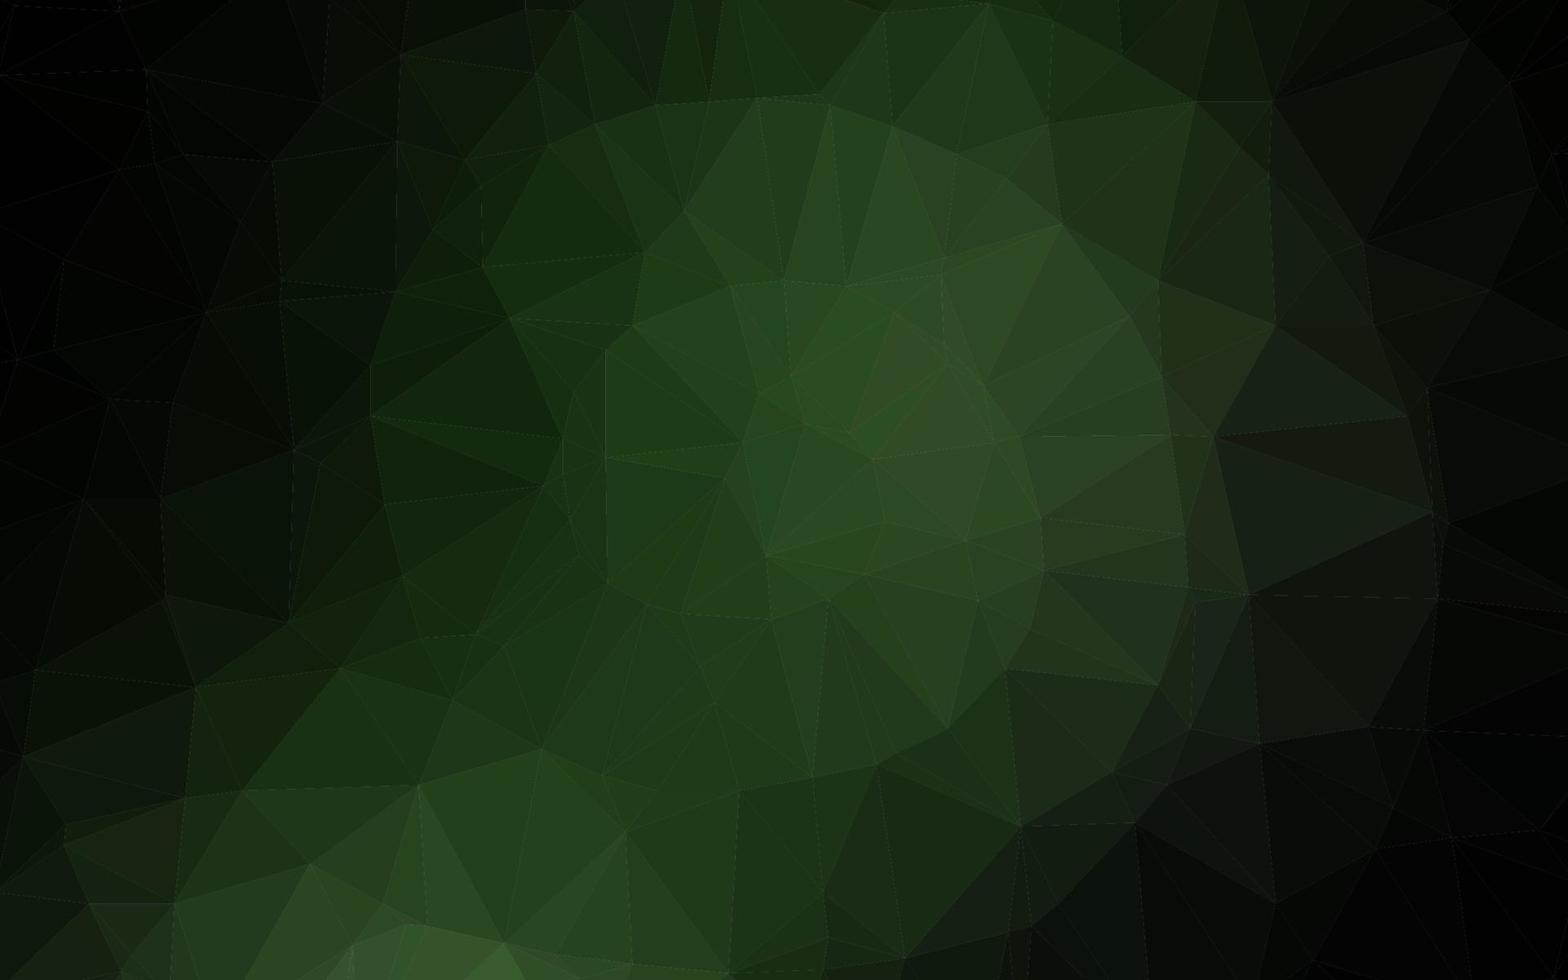 textura poligonal abstrata de vetor verde escuro.